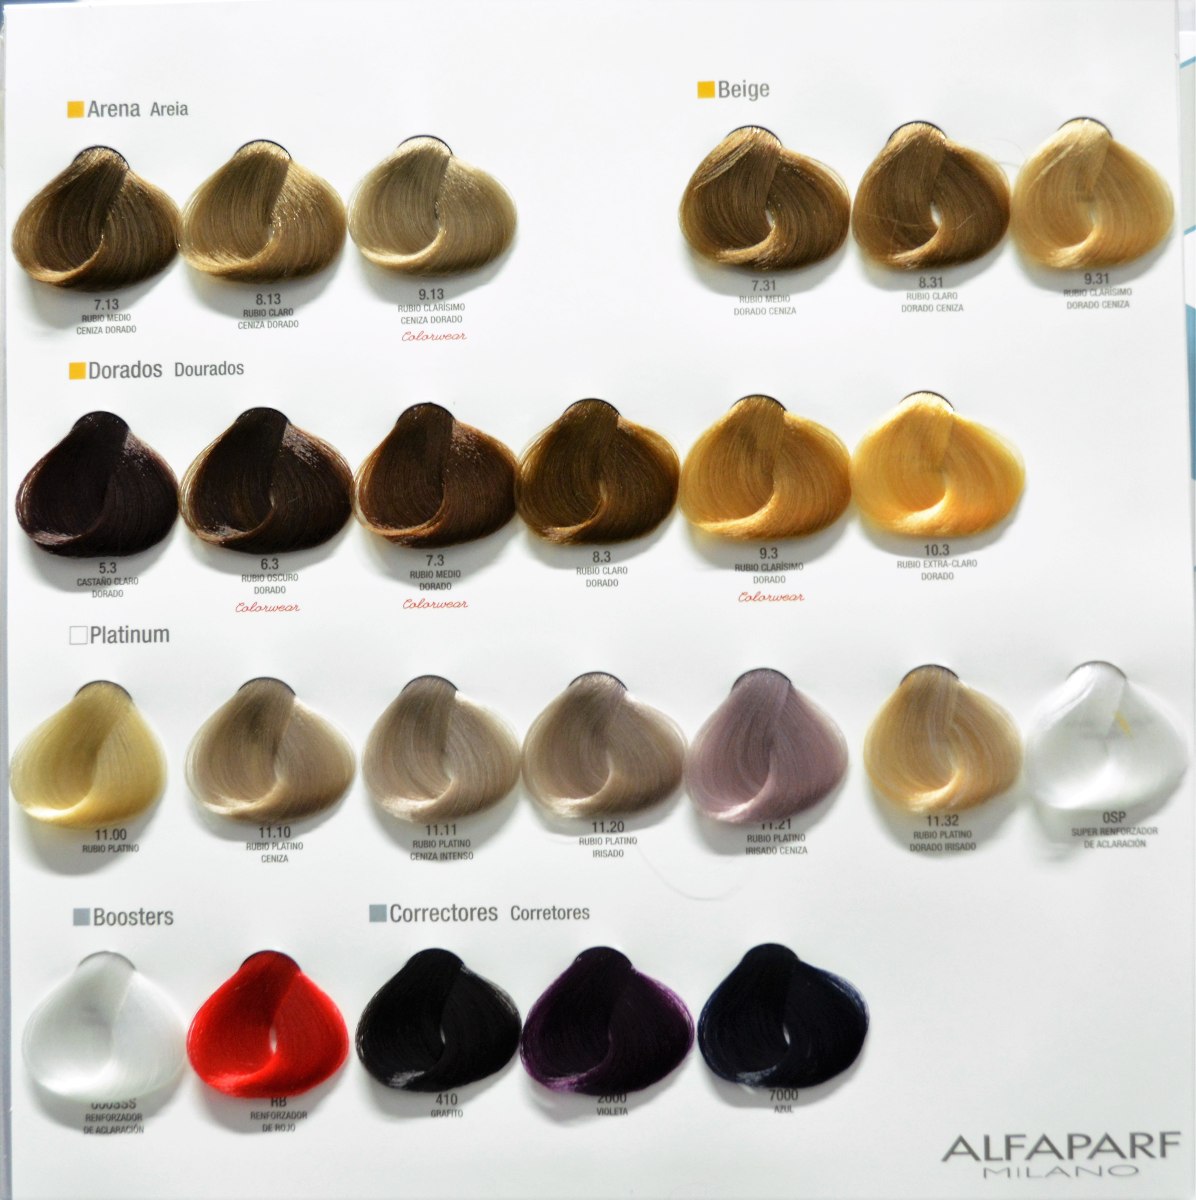 Alfaparf Tinte 10.1 + Peroxido Gratis - $ 122.67 en 